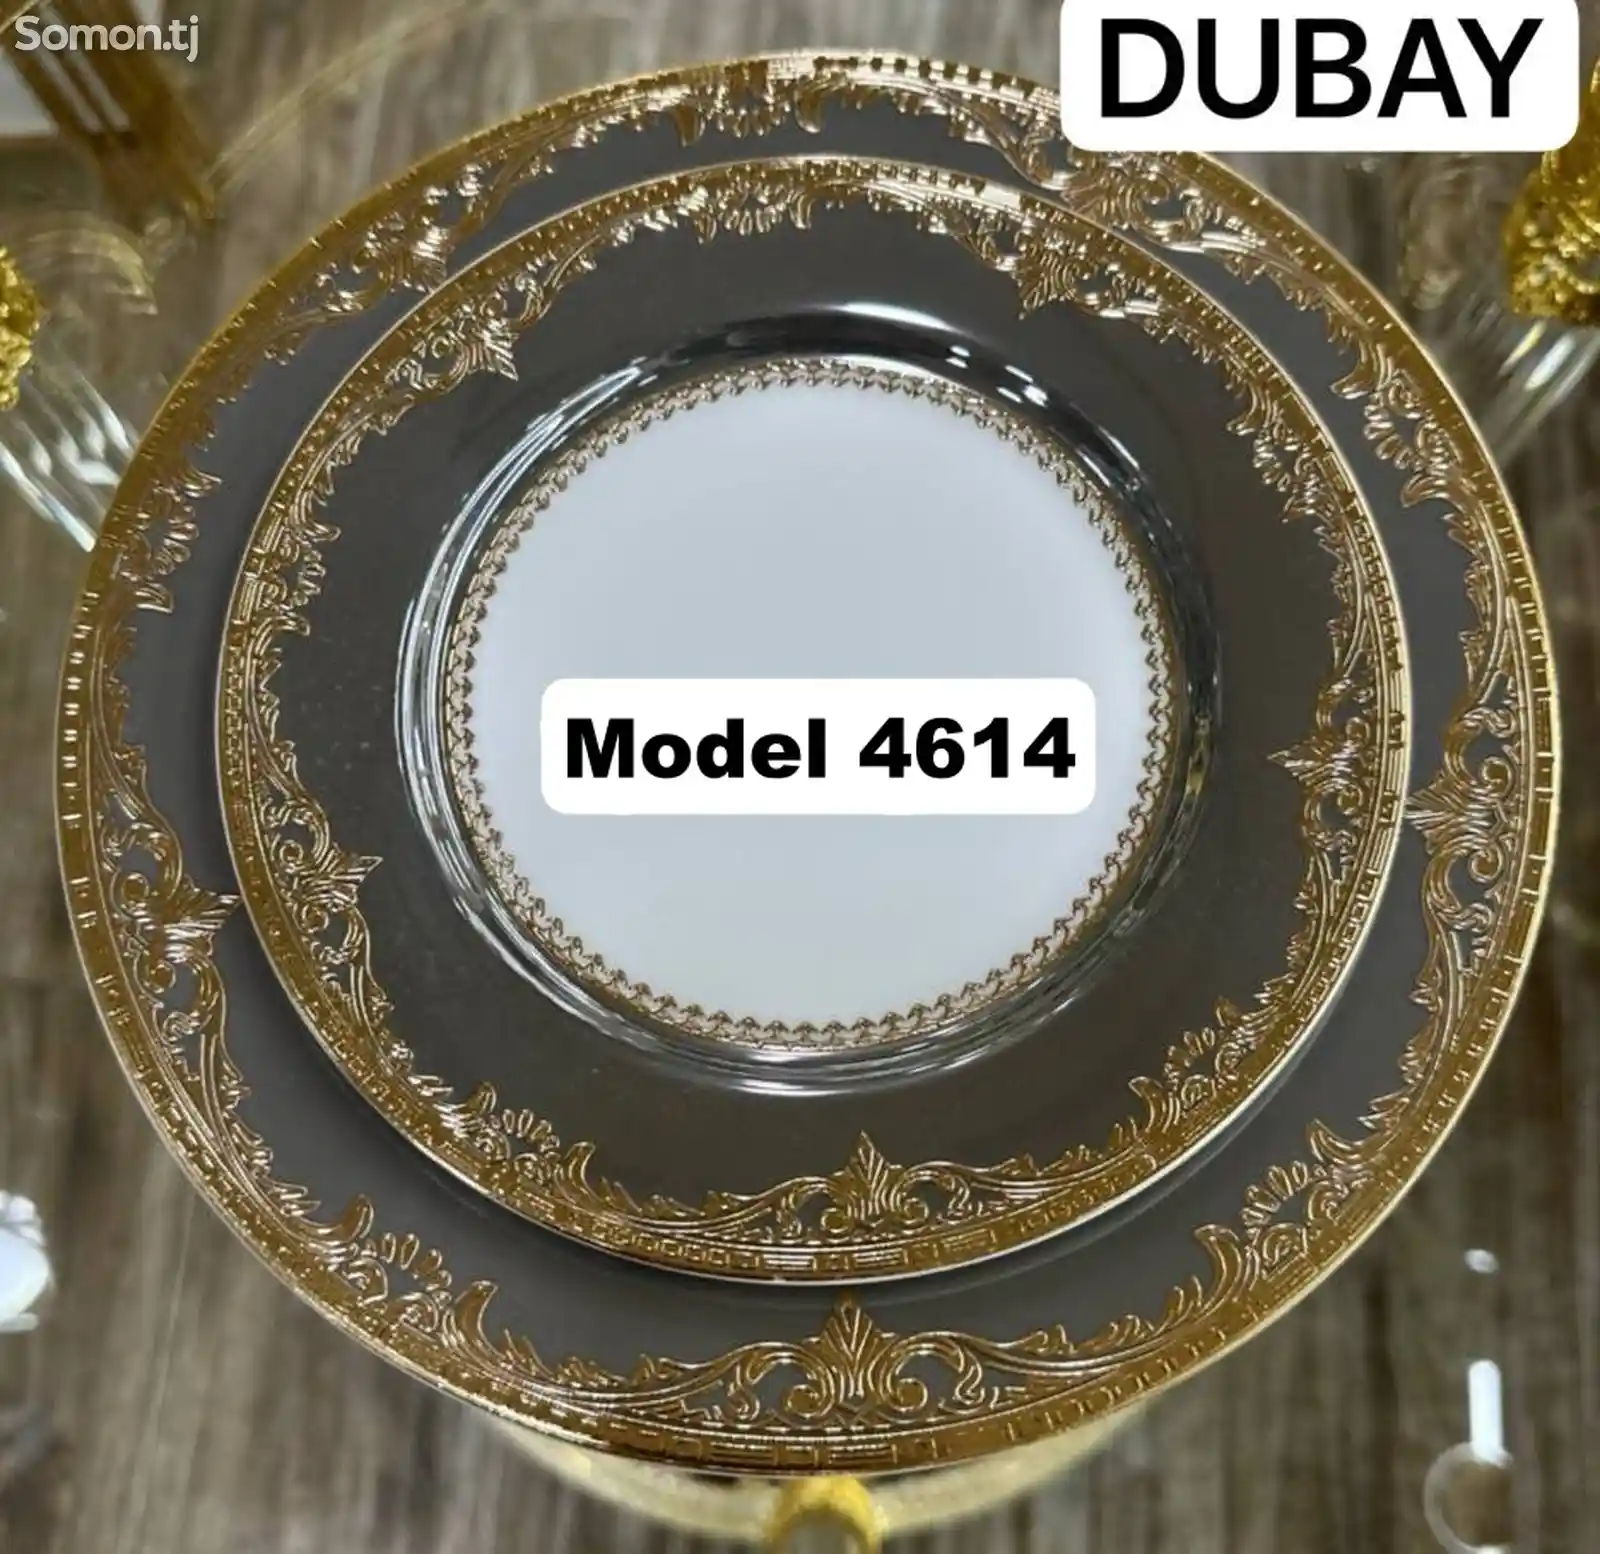 Набор посуды Dubay-4614 комплект 6-7